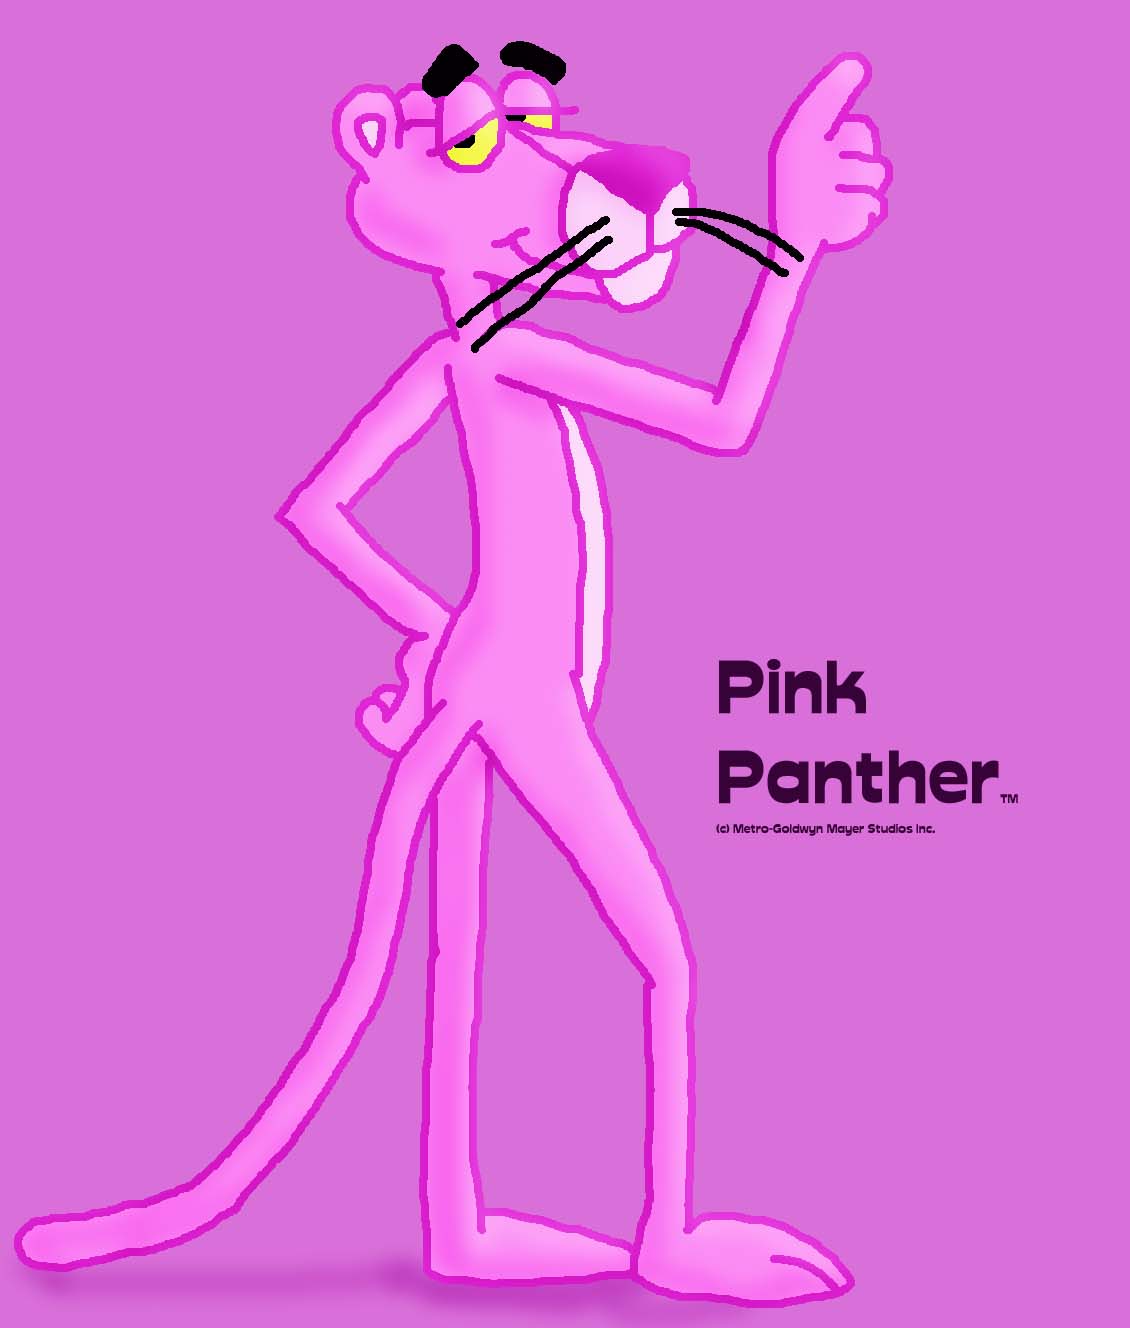 Pin The Pink Panther Wallpaper Desktop On